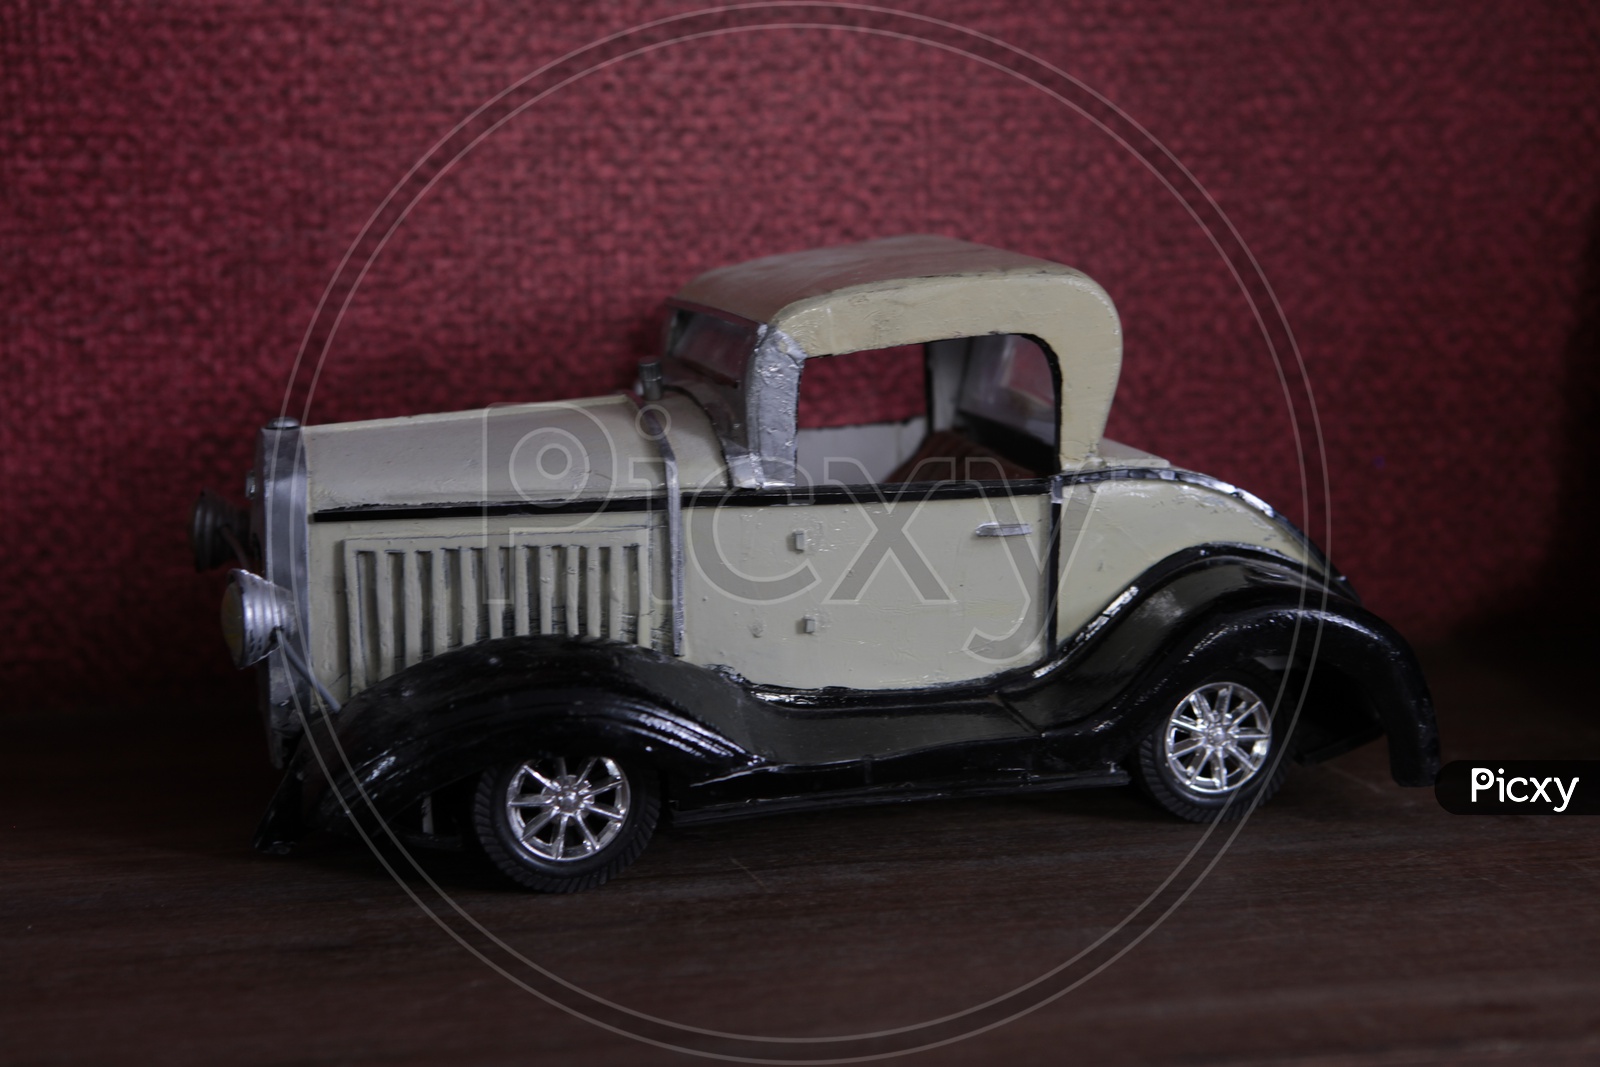 Figurine of a retro car